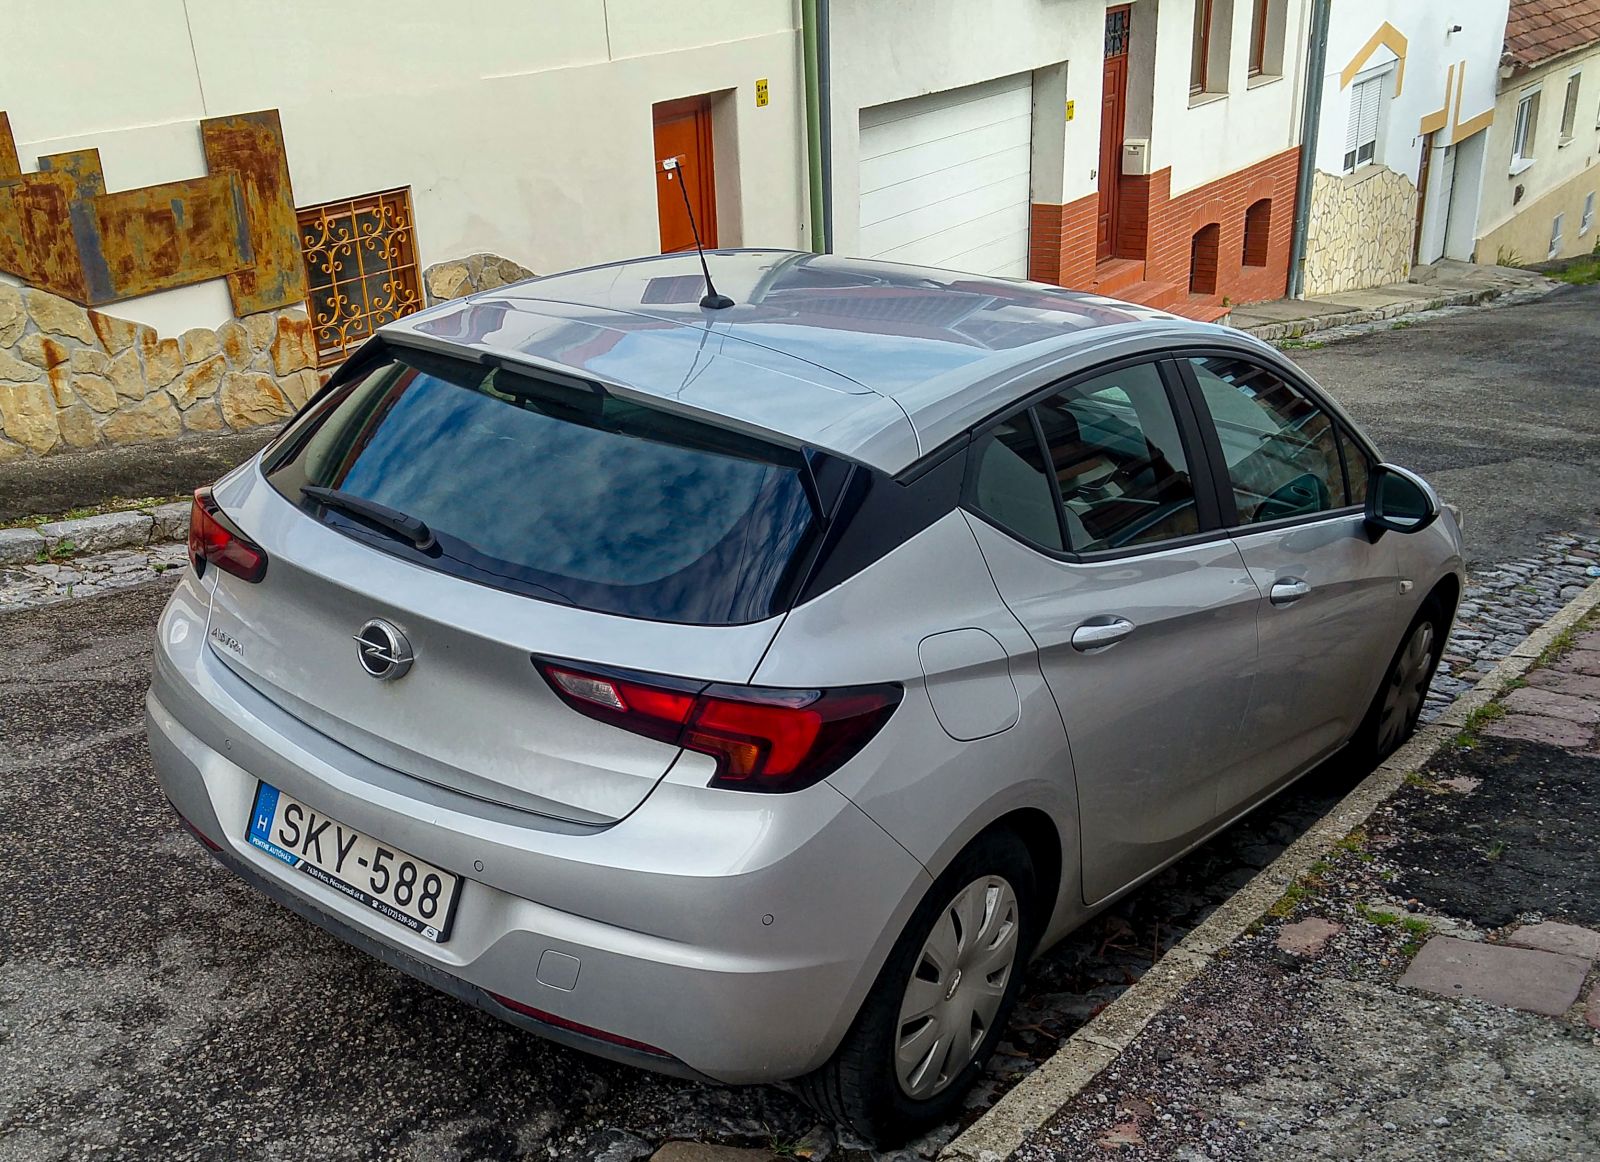 Rückansicht: Opel Astra K. Foto: Mai, 2021.